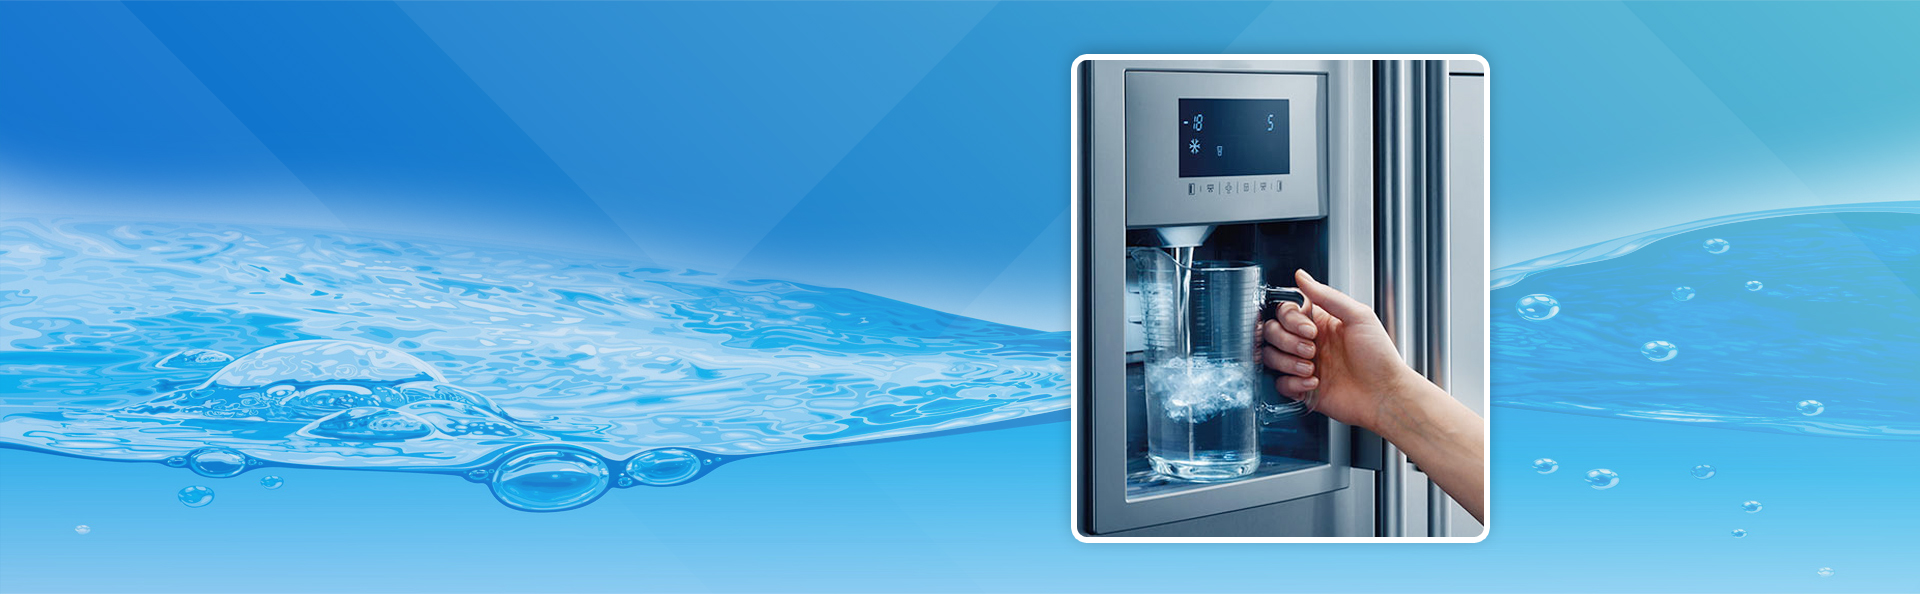 Горячую воду в холодильник. Диспенсер воды для холодильника nrs9181vxb. Водяной холодильник. Холодильник со льдом и водой. Холодильник с водичкой.